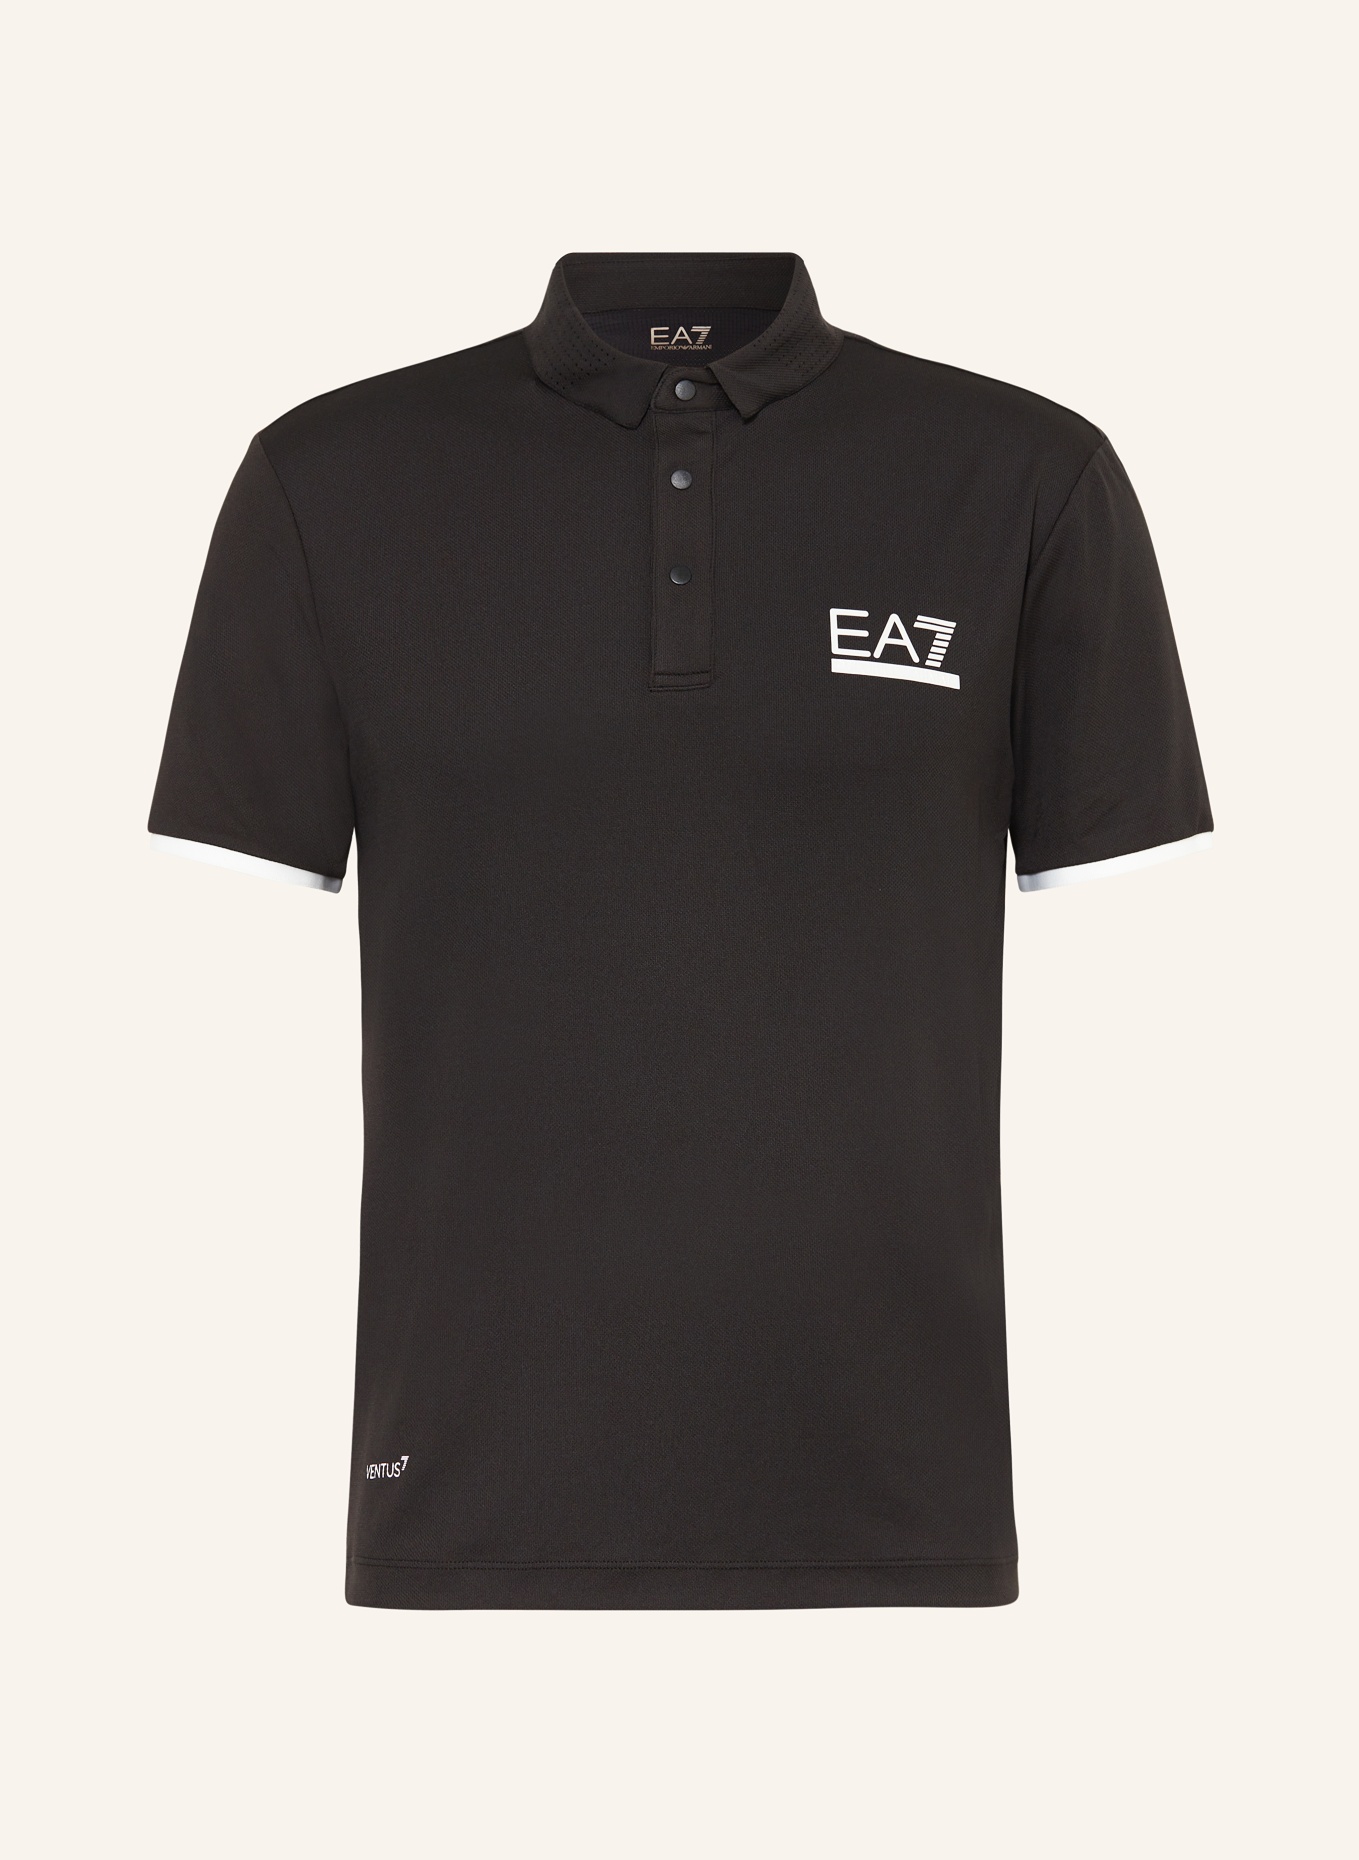 EA7 EMPORIO ARMANI Funktions-Poloshirt PRO, Farbe: SCHWARZ (Bild 1)